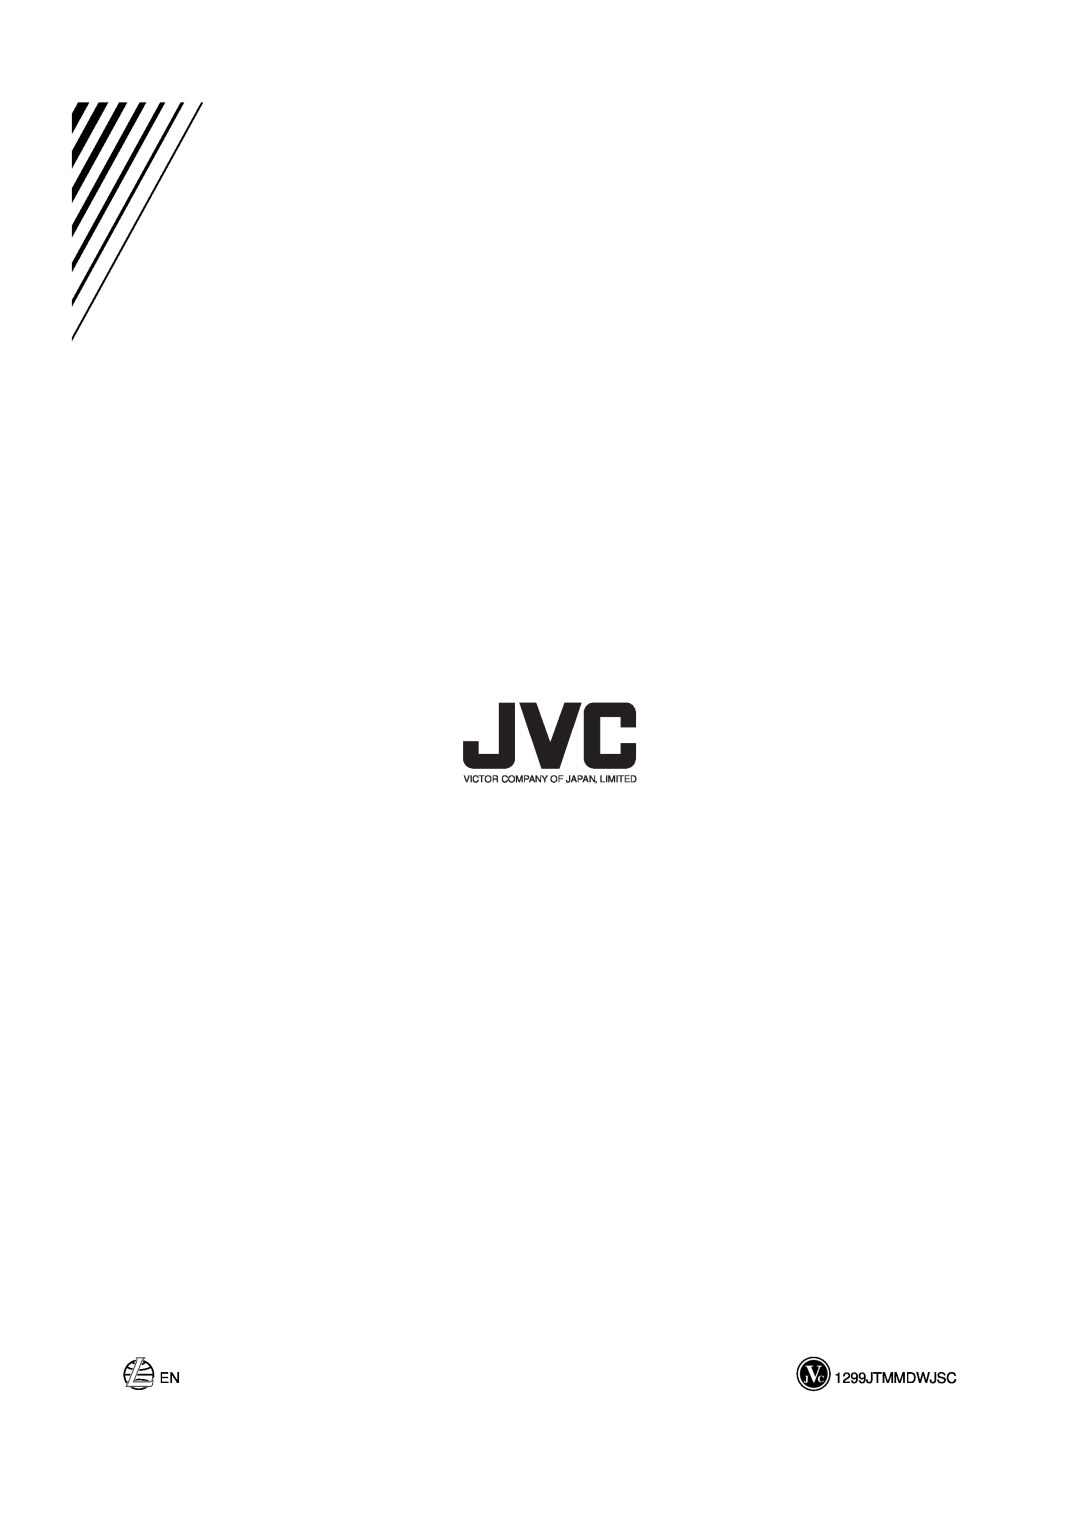 JVC XT-UXG6R, UX-G6R, SP-UXG6, AX-UXG6, TD-UXG6 manual 1299JTMMDWJSC, Victor Company Of Japan, Limited 